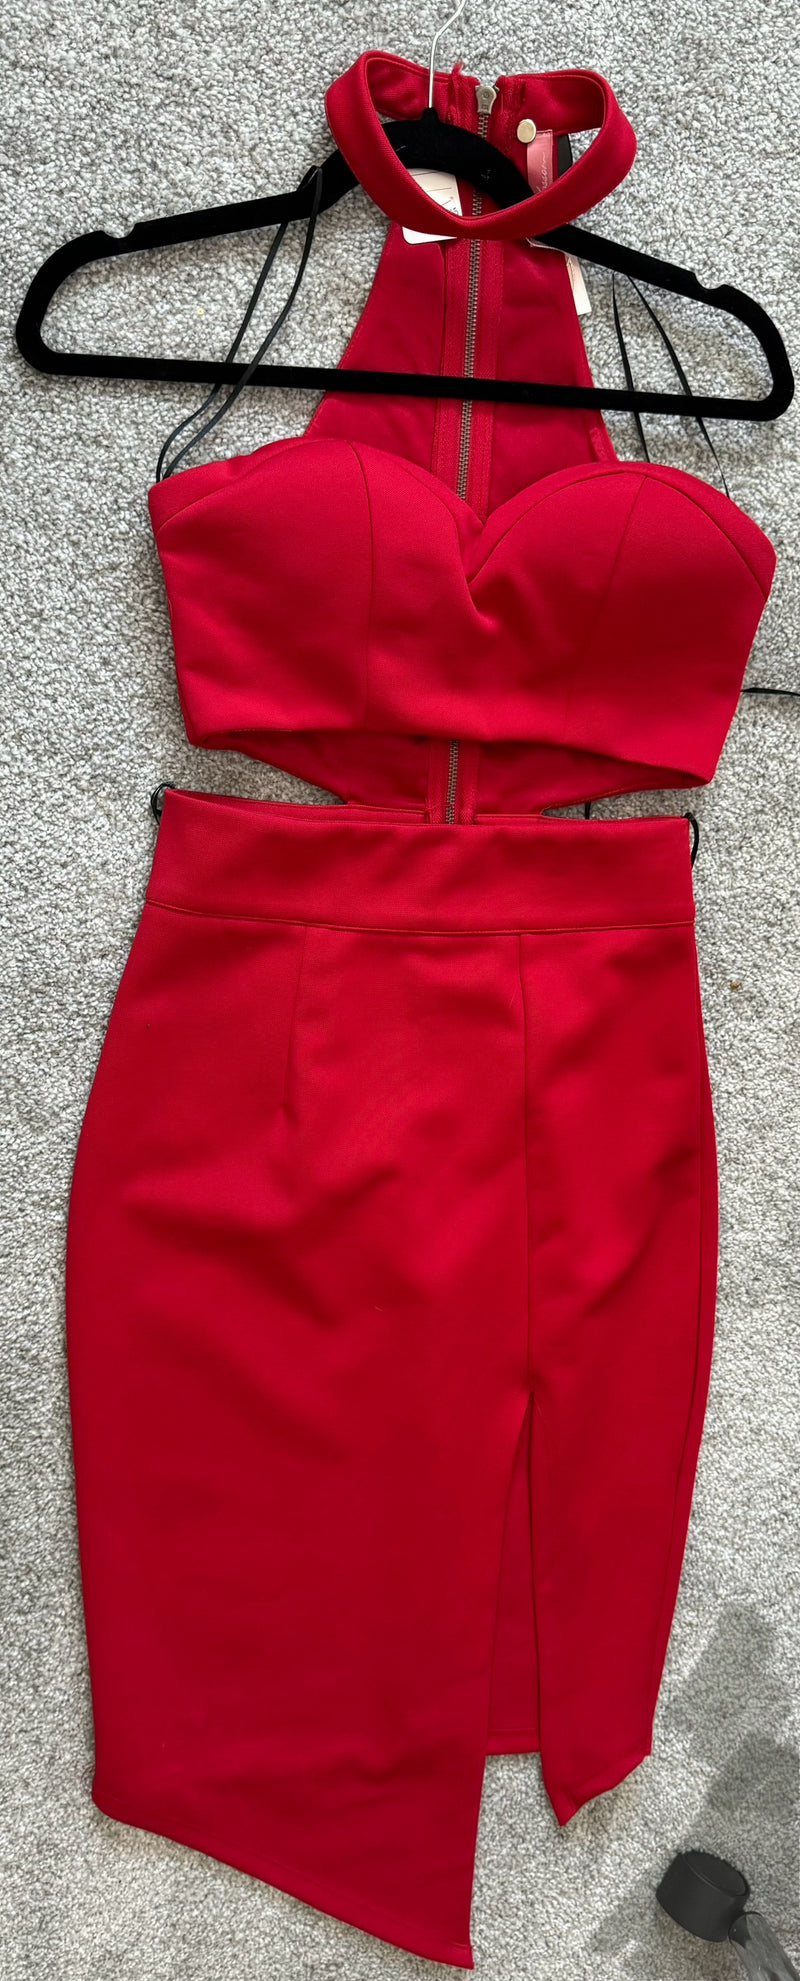 “FIRE” RED DRESS